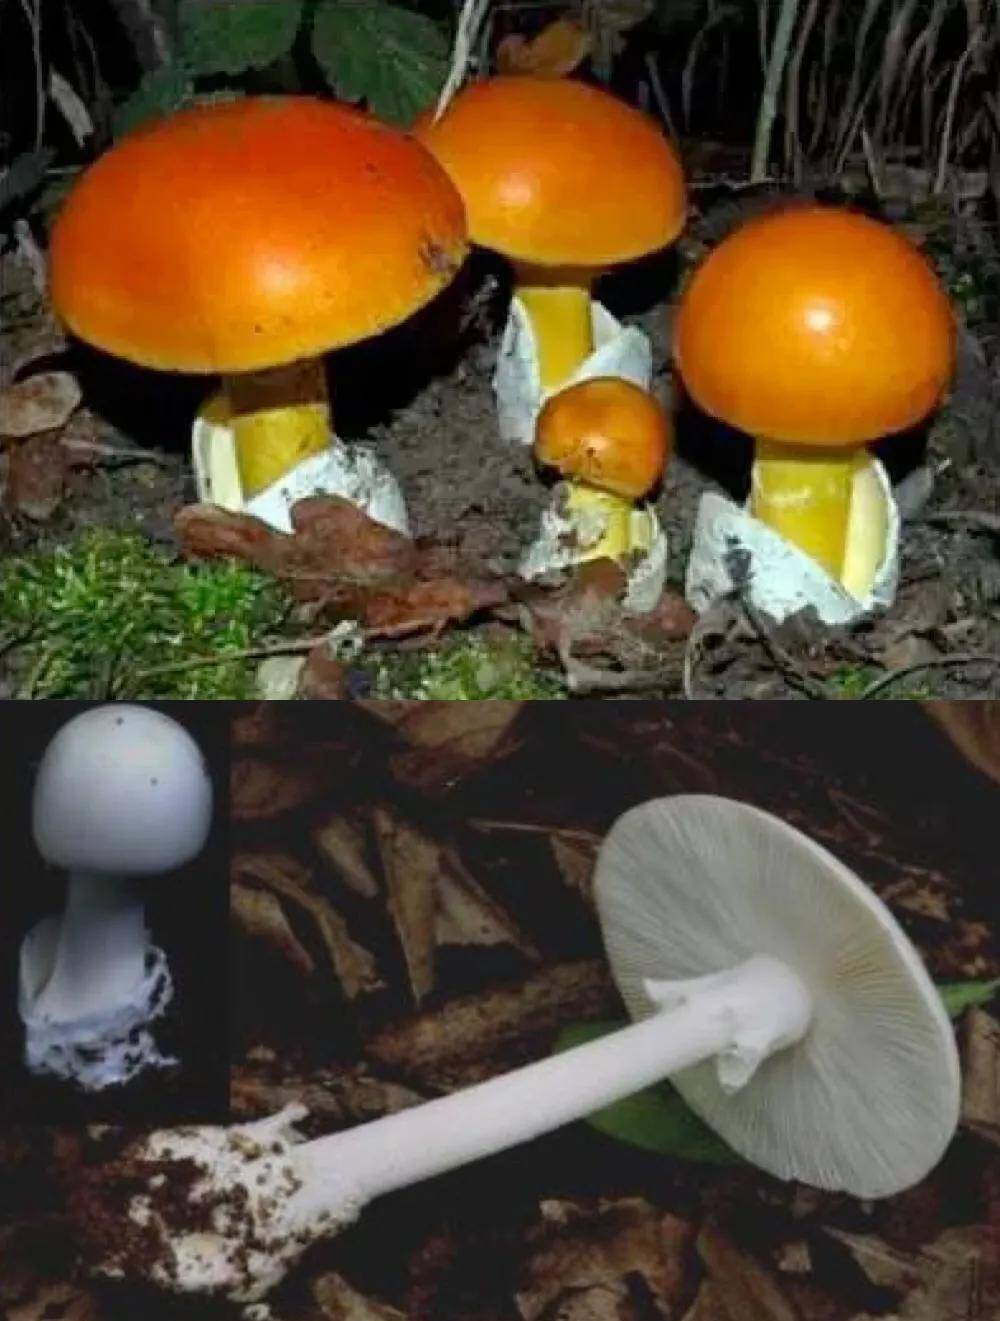 毒蘑菇其实有五大类,但吃哪种才能看到小人跳舞呢?